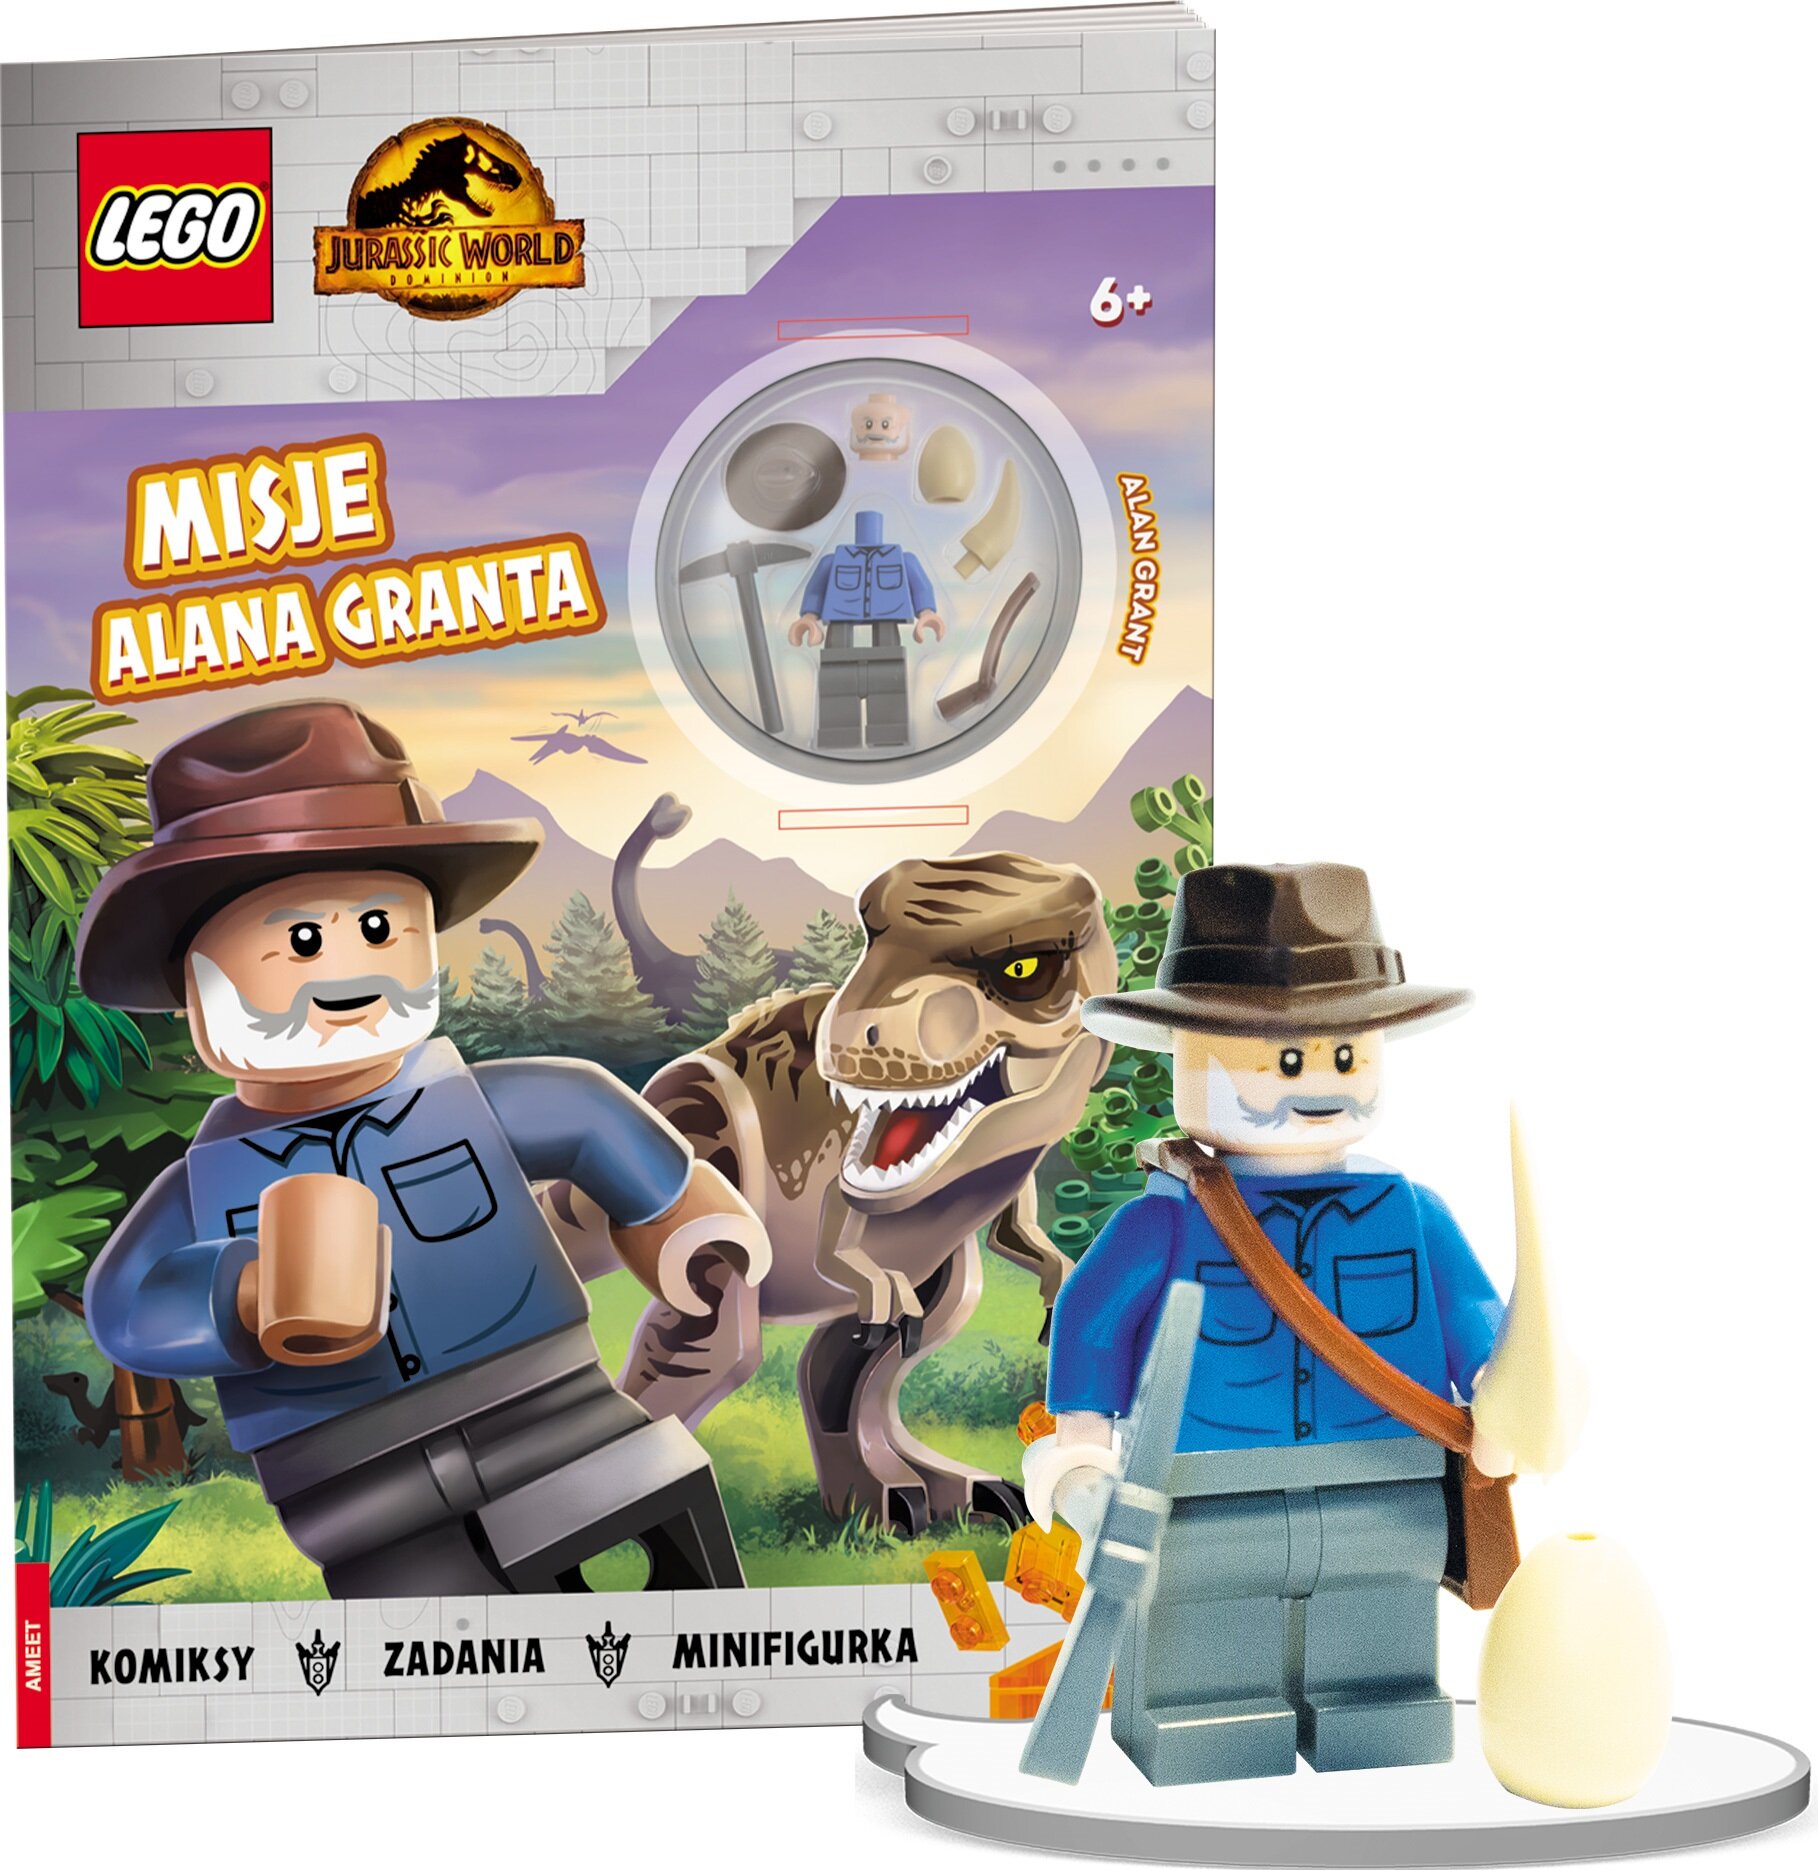 LEGO Jurassic World Misje Alana Granta LNC-6204 Książka - niskie ceny i  opinie w Media Expert